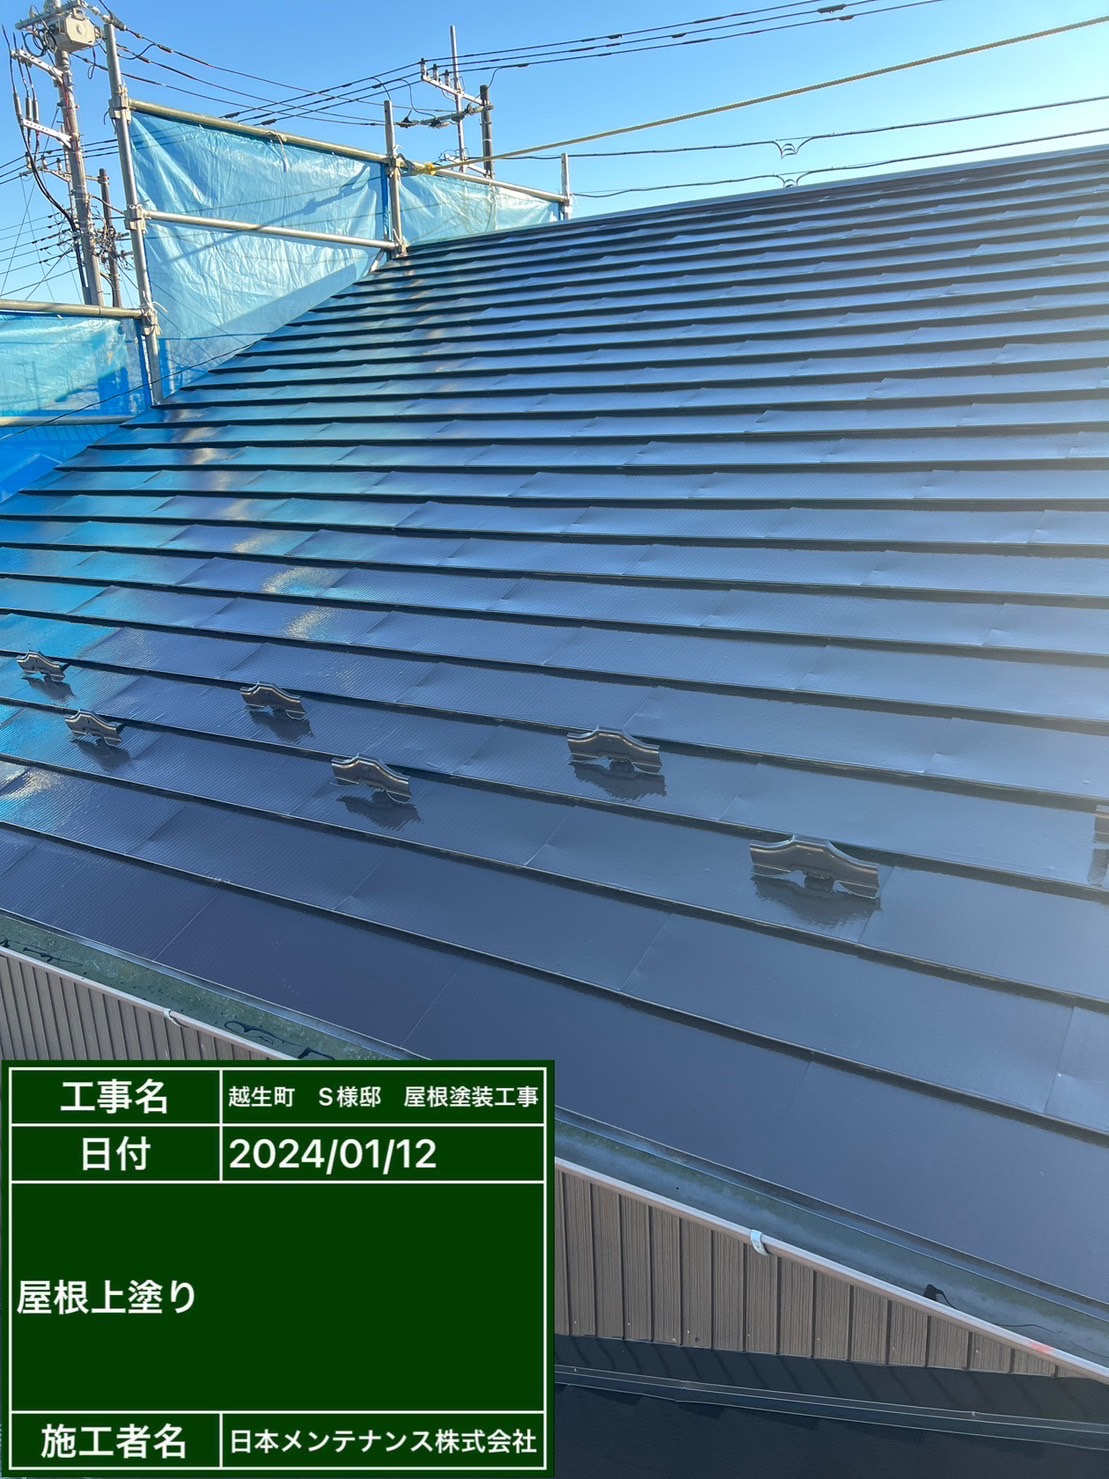 埼玉県越生町で金属屋根を茶色に塗り替えました。施工後